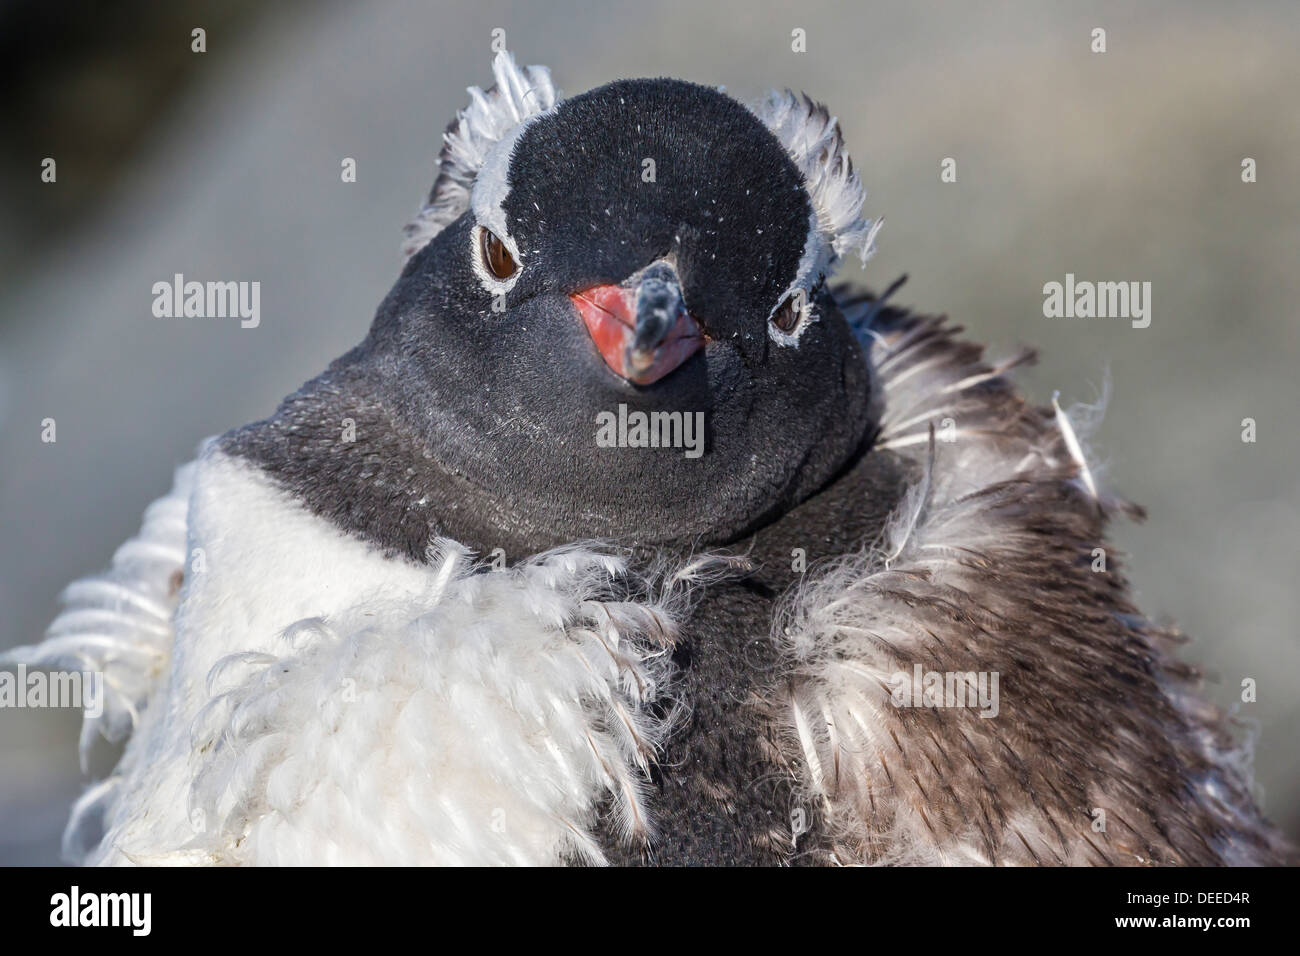 Des profils Gentoo pingouin (Pygoscelis papua) mue, Jougla Point, Île Wiencke, Antarctique, Sud de l'océan, les régions polaires Banque D'Images